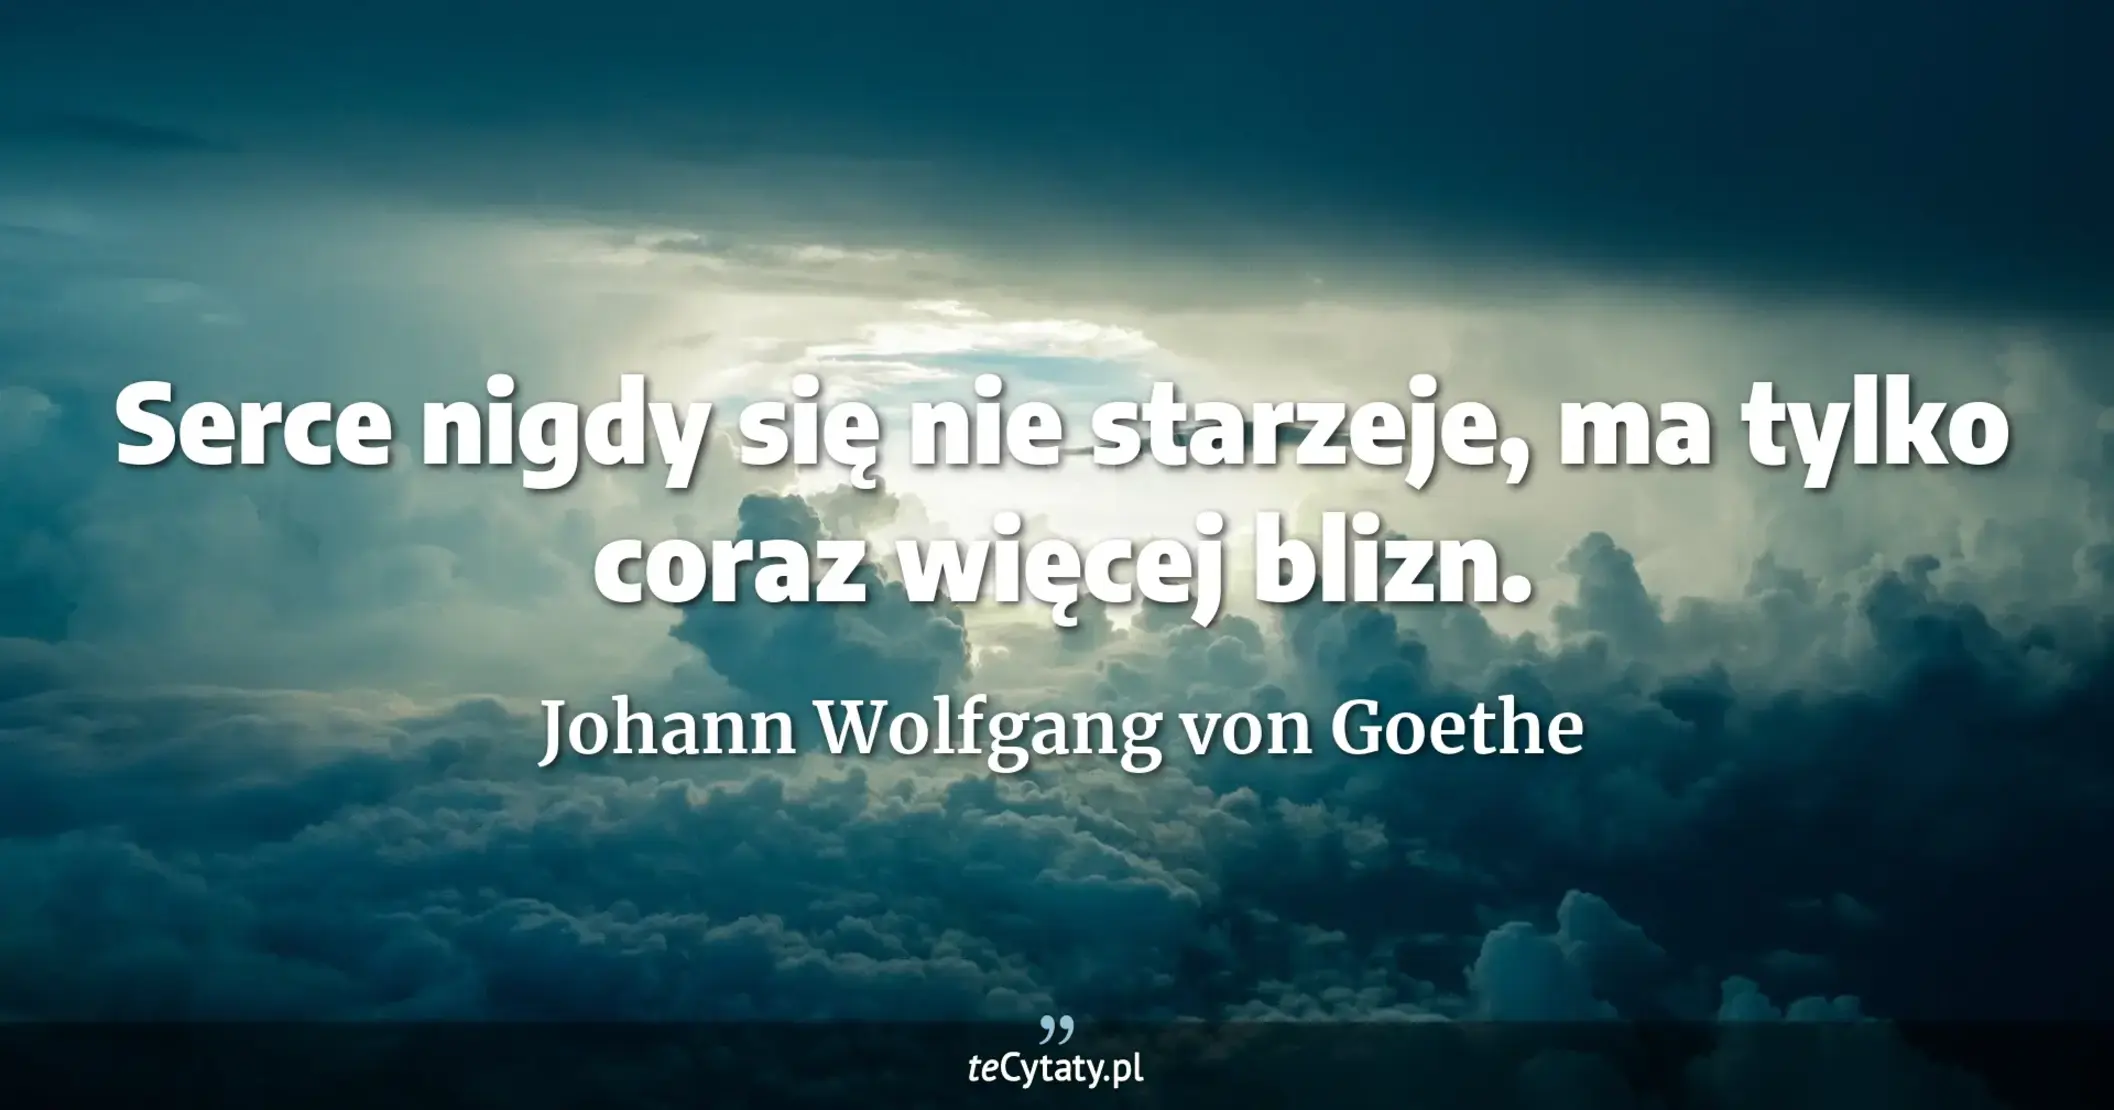 Serce nigdy się nie starzeje, ma tylko coraz więcej blizn. - Johann Wolfgang von Goethe